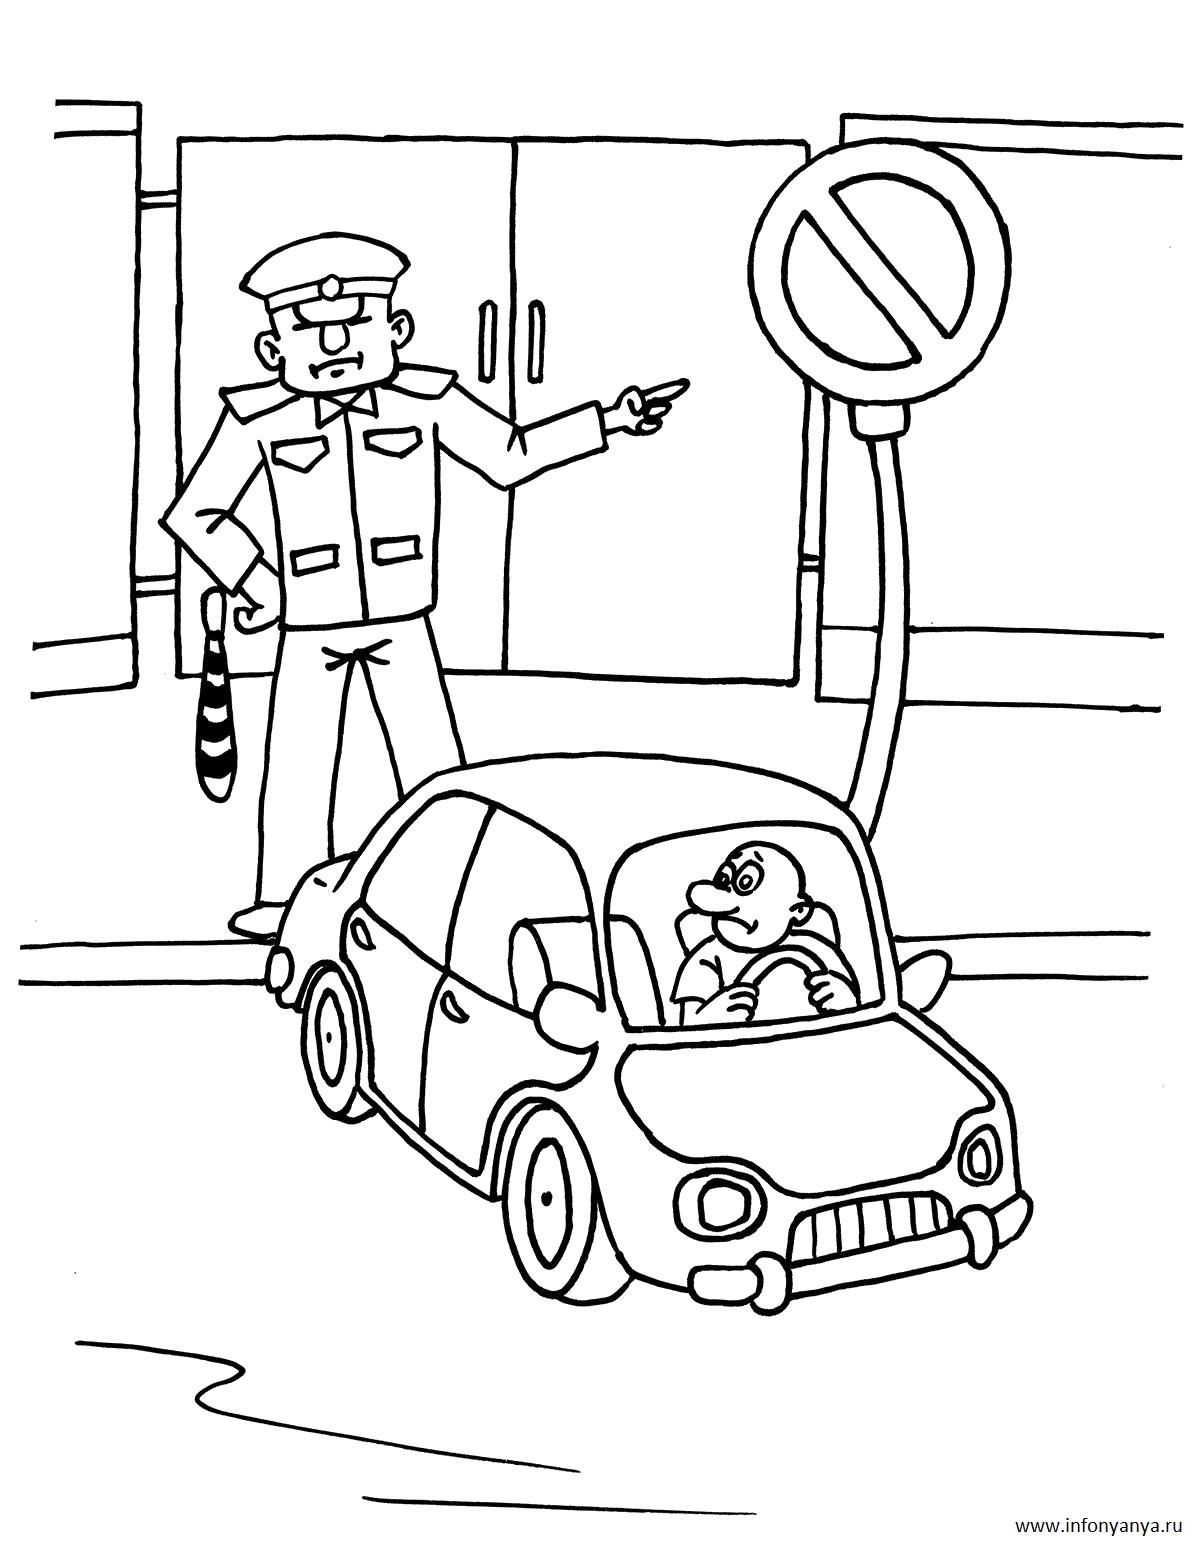 Раскраска с изображением дорожных знаков и перехода через дорогу (безопасность, игры, правила)